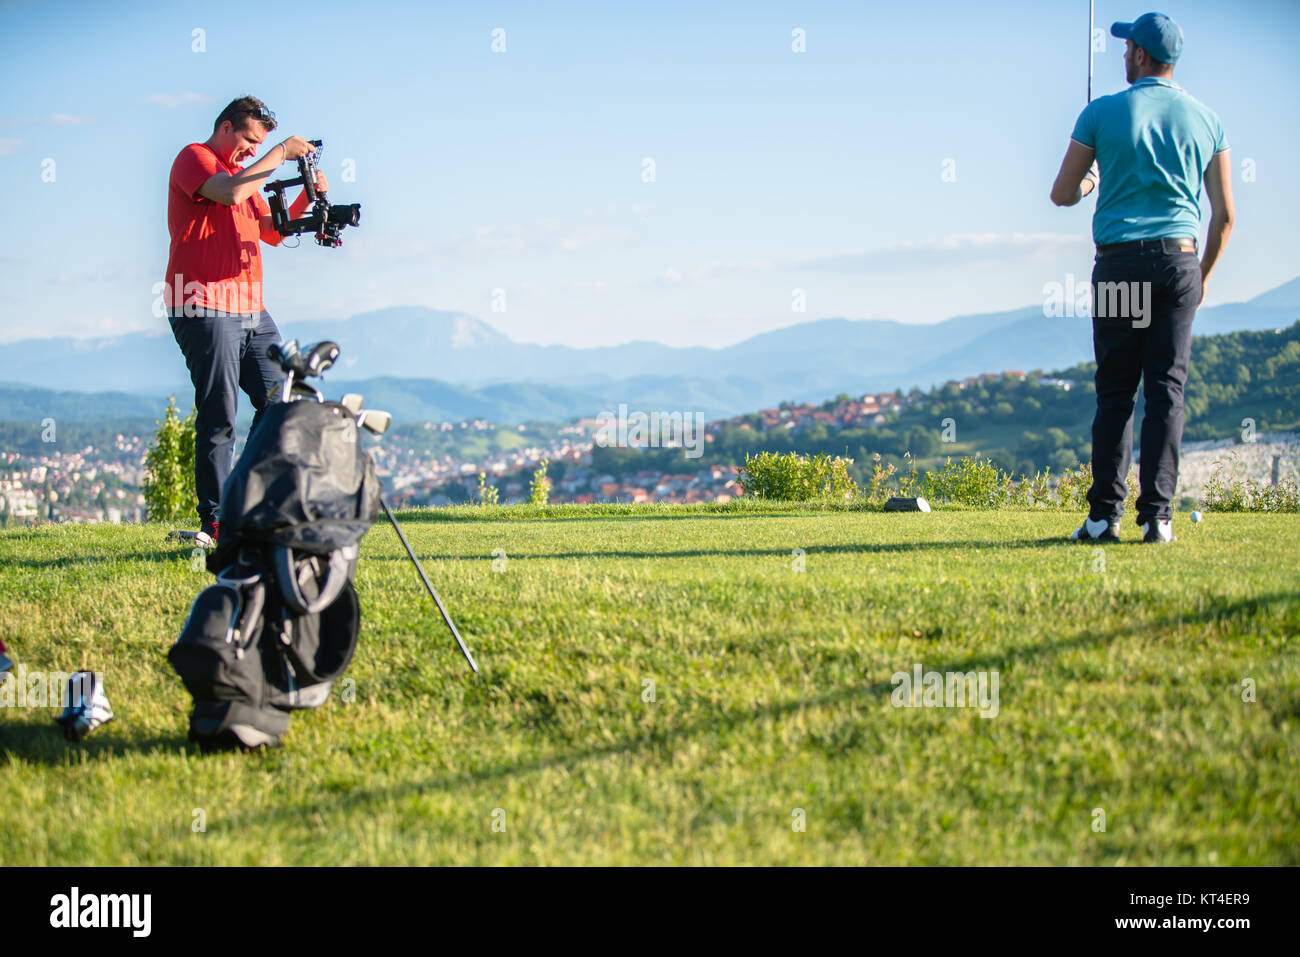 Photographe à prendre des photos d'un joueur de golf Banque D'Images